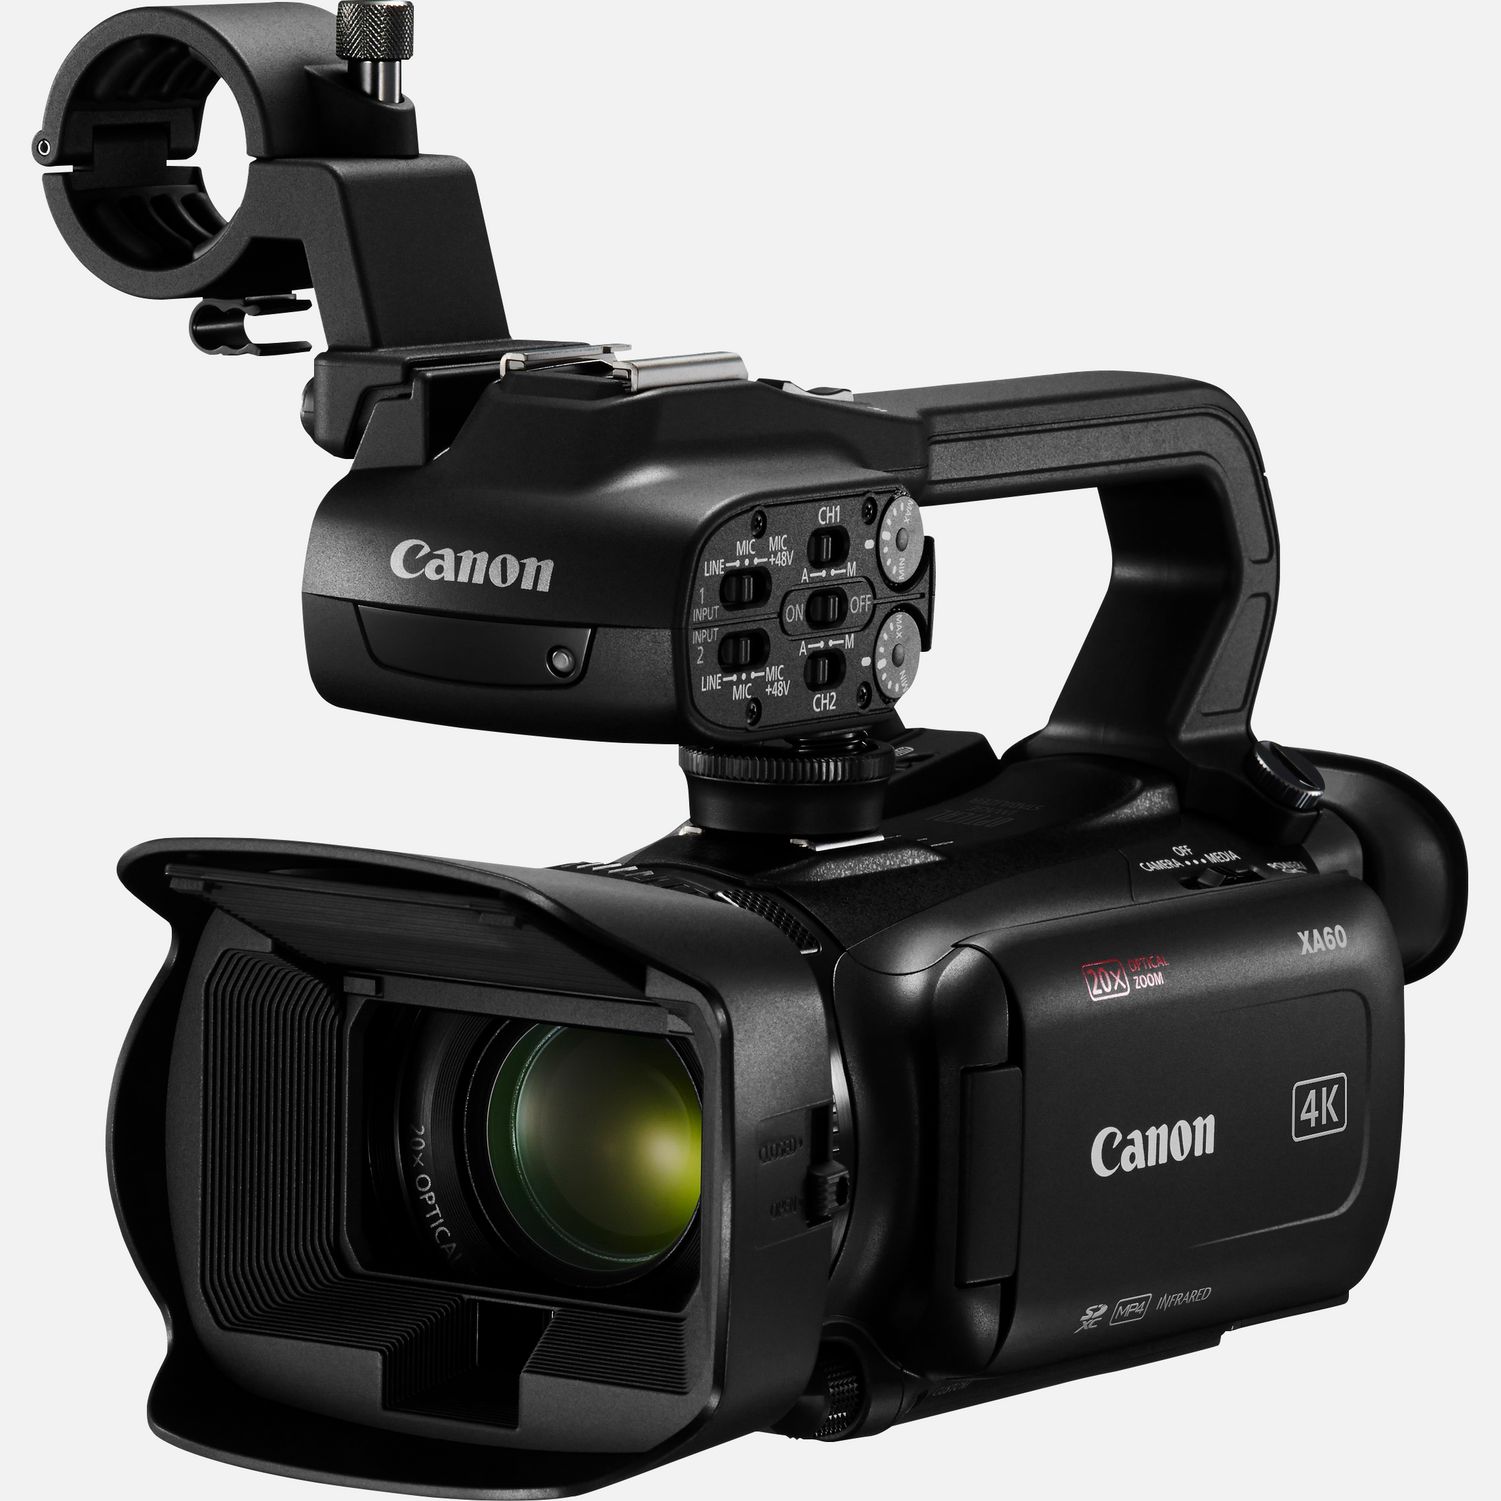 Die Canon XA60 ist eine professionelle Videokamera mit einem optimalen Verhltnis von Bildqualitt und Mobilitt, die sich ideal fr Reportagen, Dokumentarfilme und eine breite Palette anderer Aufnahmeanwendungen eignet. Du kannst berall hochwertige 4K UHD-Aufnahmen machen, die dank eines HDMI-Ausgangs problemlos in einen breiteren professionellen Workflow eingebunden werden knnen. Sie berzeugt mit hervorragender Oversampling-HD-Verarbeitung, dem fortschrittlichen Autofokus, dem Canon Objektiv mit 20fach optischem Zoom und UVC-HD-Livestreaming via USB-C ber einen Computer. Die Canon XA60 kann die Aufnahmen auch im XF-AVC- oder im MP4-Format aufzeichnen und spter weitergeben.  Vorteile      Der 4K 1/2,3-Zoll-Typ CMOS-Sensor und der DIGIC DV6 Bildprozessor sorgen fr atemberaubende 4K UHD- und hervorragende FullHD-Aufnahmen. Durch Oversampling der 4K-Sensordaten liefert der Camcorder auch erstklassige FullHD-Videos.          Das Canon Objektiv deckt einen Brennweitenbereich von 29,3 mm-Weitwinkel (quivalent KB-Vollformat) bis zu enormen 601 mm mit Dynamic IS ab. Der Digitalzoom liefert eine 800-fache Vergrerung mit 5-Achsen-Bildstabilisierung.          Die einstellbare Fokussiergeschwindigkeit und das fortschrittliche Hybrid-AF-System ermglichen eine schnelle und przise Fokussierung.          Auf dem 3,5-Zoll LC-Display kannst du den gewnschten Fokuspunkt per Berhrung festlegen.          XF-AVC 4K UHD 160 Mbit/s wird mit 25p aufgenommen und FullHD 45 Mbit/s mit 50p/ 50i/ 25p. Wenn kleinere Dateien gewnscht werden, stehen MP4 4K mit 150 Mbit/s und 25p sowie Full HD mit 35/17 Mbit/s und 50p/25p zur Verfgung.          Auerdem stehen Zeitlupenaufnahmen in Full HD mit halber Geschwindigkeit oder Zeitrafferaufnahmen in 4K/Full HD mit bis zu 1.200-facher Geschwindigkeit zur Verfgung. Eine Farbabstimmung mit anderen Canon Kameras ist ber das Men fr benutzerdefinierte Bildeinstellungen mglich.          Zu den Aufnahmeoptionen gehren HDMI, die gleichzeitige Backup- und fortlaufende Aufzeichnung ber zwei SD-Karten sowie der Infrarot-Modus.          Du kannst HD-Videos via UVC mit einem Computer live streamen und bei Bedarf auch einen Datums- und Zeitstempel einblenden. Zwei XLR-Anschlsse am abnehmbaren Griff und 4-Kanal-Linear-PCM bieten zudem professionelle Audiooptionen.          Lieferumfang       XA60 professioneller Camcorder         Tragegriff HDU-1         PD-E1 USB-Netzadapter         BP-820 Akku         Streulichtblende mit integriertem Objektivschutz         Mikrofonhalter              Technische Daten              4K UHD / 25p  MP4 bis zu 150 Mbit/s, XF-AVC bis zu 160 Mbit/s                20fach optischer Zoom  Weitwinkel-Zoomobjektiv mit einem Brennweitenbereich von 29,3  601mm (quivalent KB-Vollformat)                HD-Verarbeitung mit Oversampling  verwendet den 4K UHD-Sensor, um erstklassige Full HD-Bilder zu generieren                Optischer Bildstabilisator  Optimierter optischer 5-Achsen-Bildstabilisator mit Dynamic IS                Infrarot  IR-Modus fr hochwertige Videoaufnahmen bei extrem wenig bis gar keinem Umgebungslicht                Touchscreen  Einfache Fokuspunkt- und Kamerasteuerung ber 3,5-Zoll-Touchscreen                4-Kanal-Audio  Lineares PCM-Audio und 2 XLR-Eingnge plus integriertes Mikrofon                Zwei Steckpltze  Zwei Kartenslots fr die gleichzeitige oder fortlaufende Aufnahme auf SD-Karte                USB-C  Video-Livestreaming ber Mac und PC oder den GPS-Empfnger GP-E2 von Canon          Alle technischen Daten zeigen